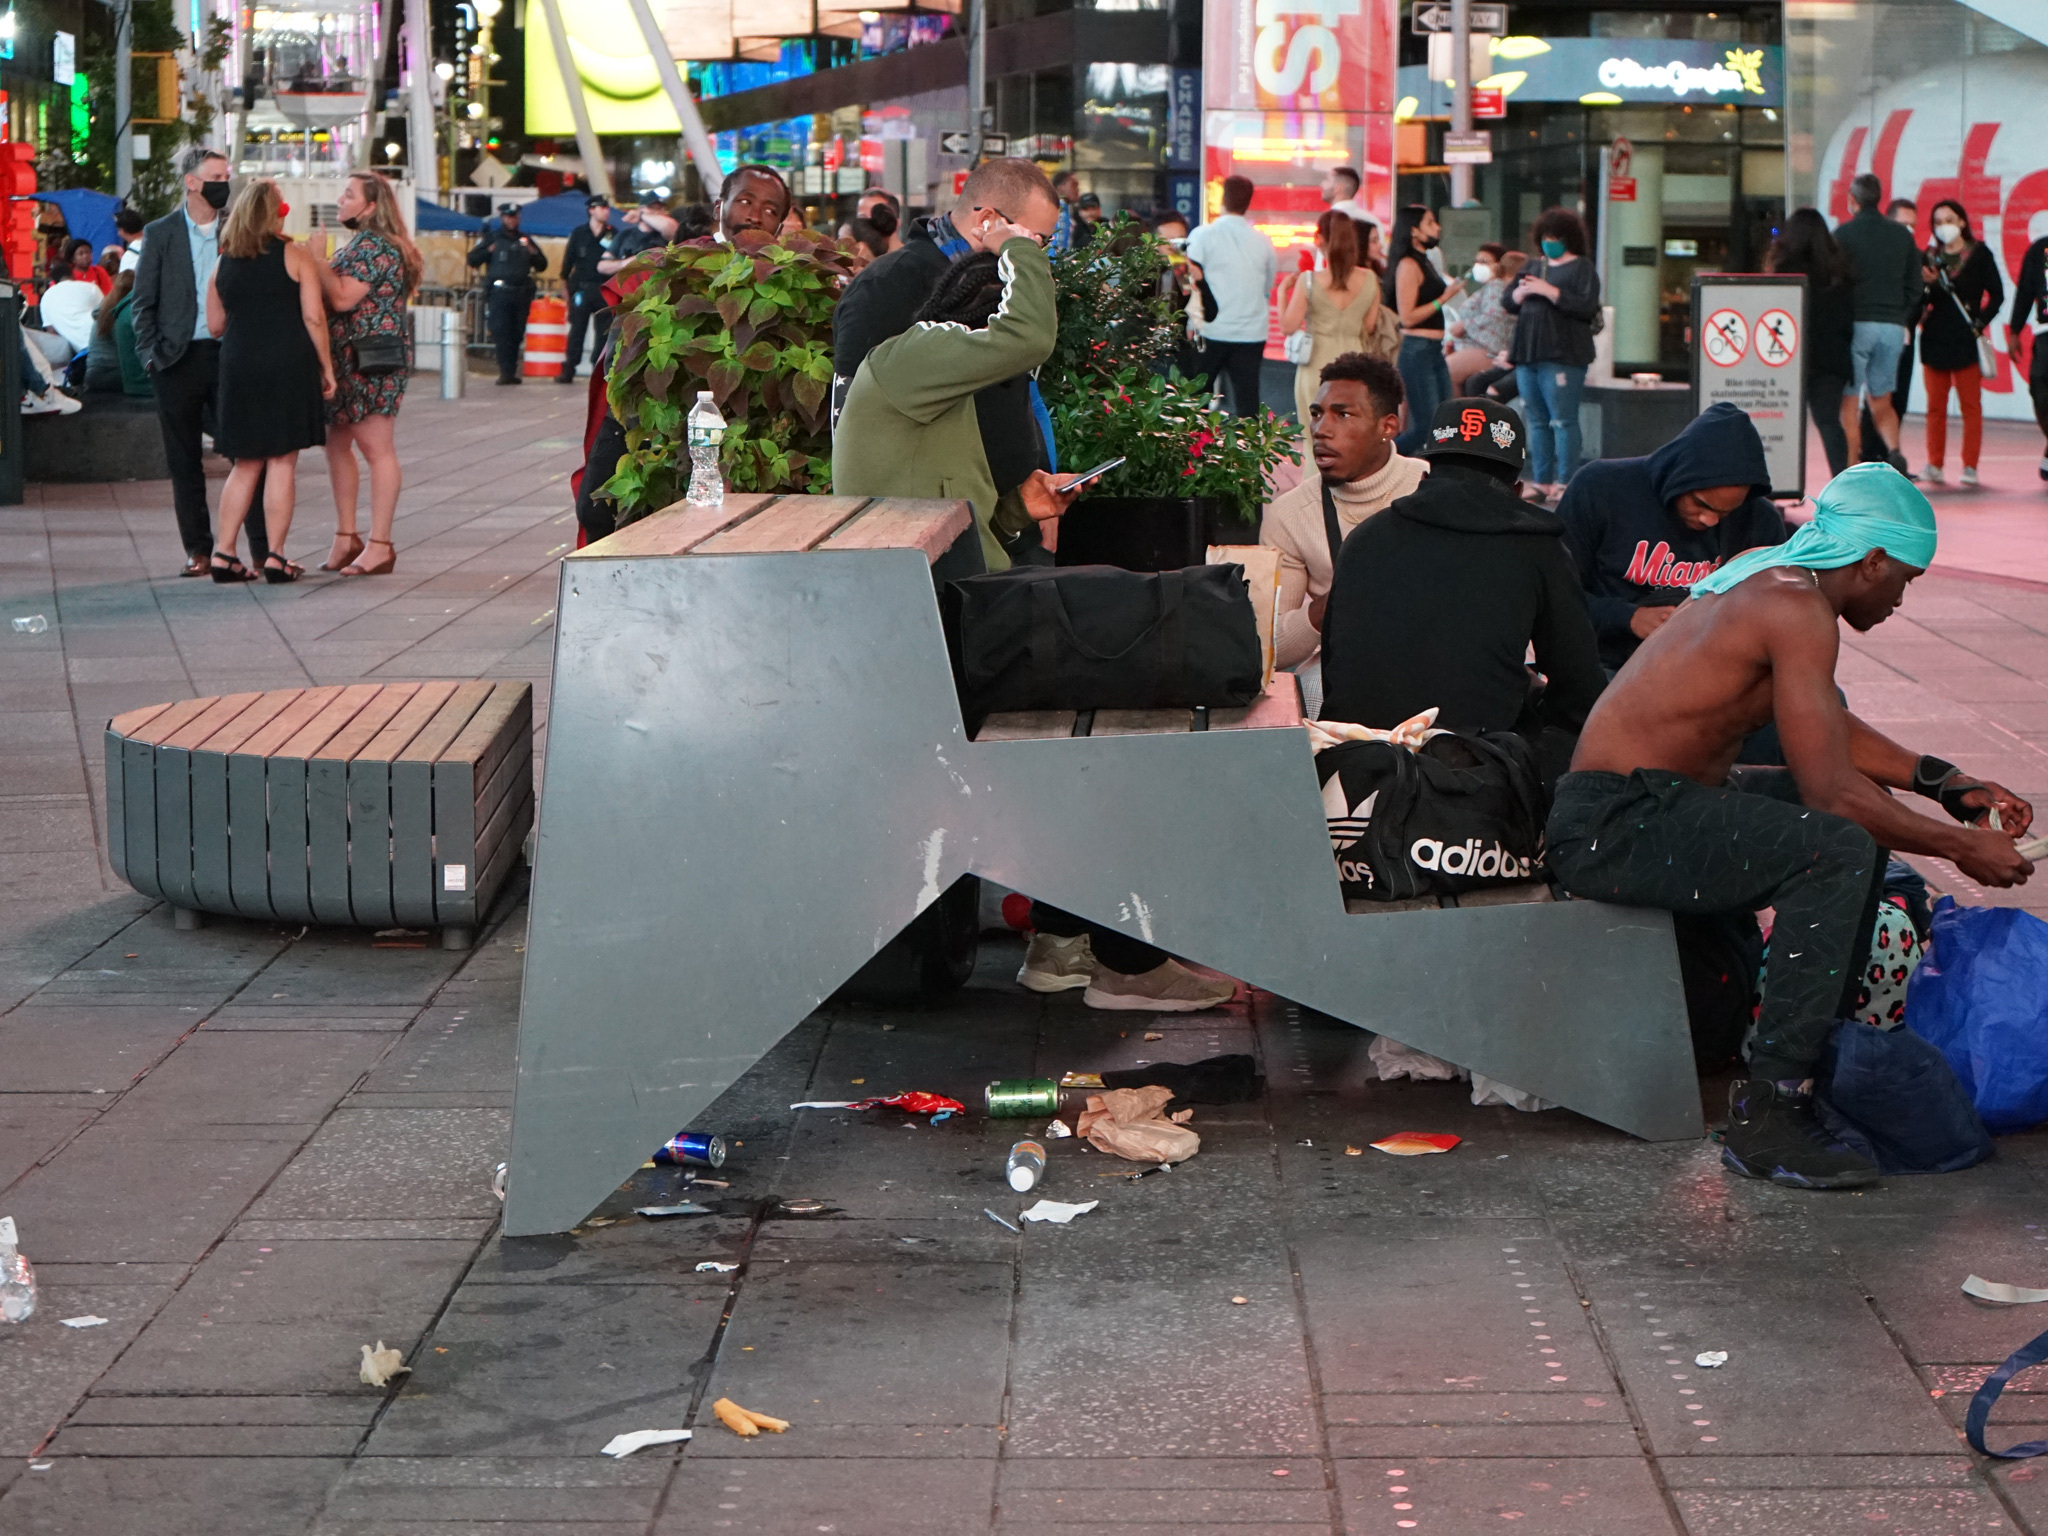 NYC Streets: Times Square Trash